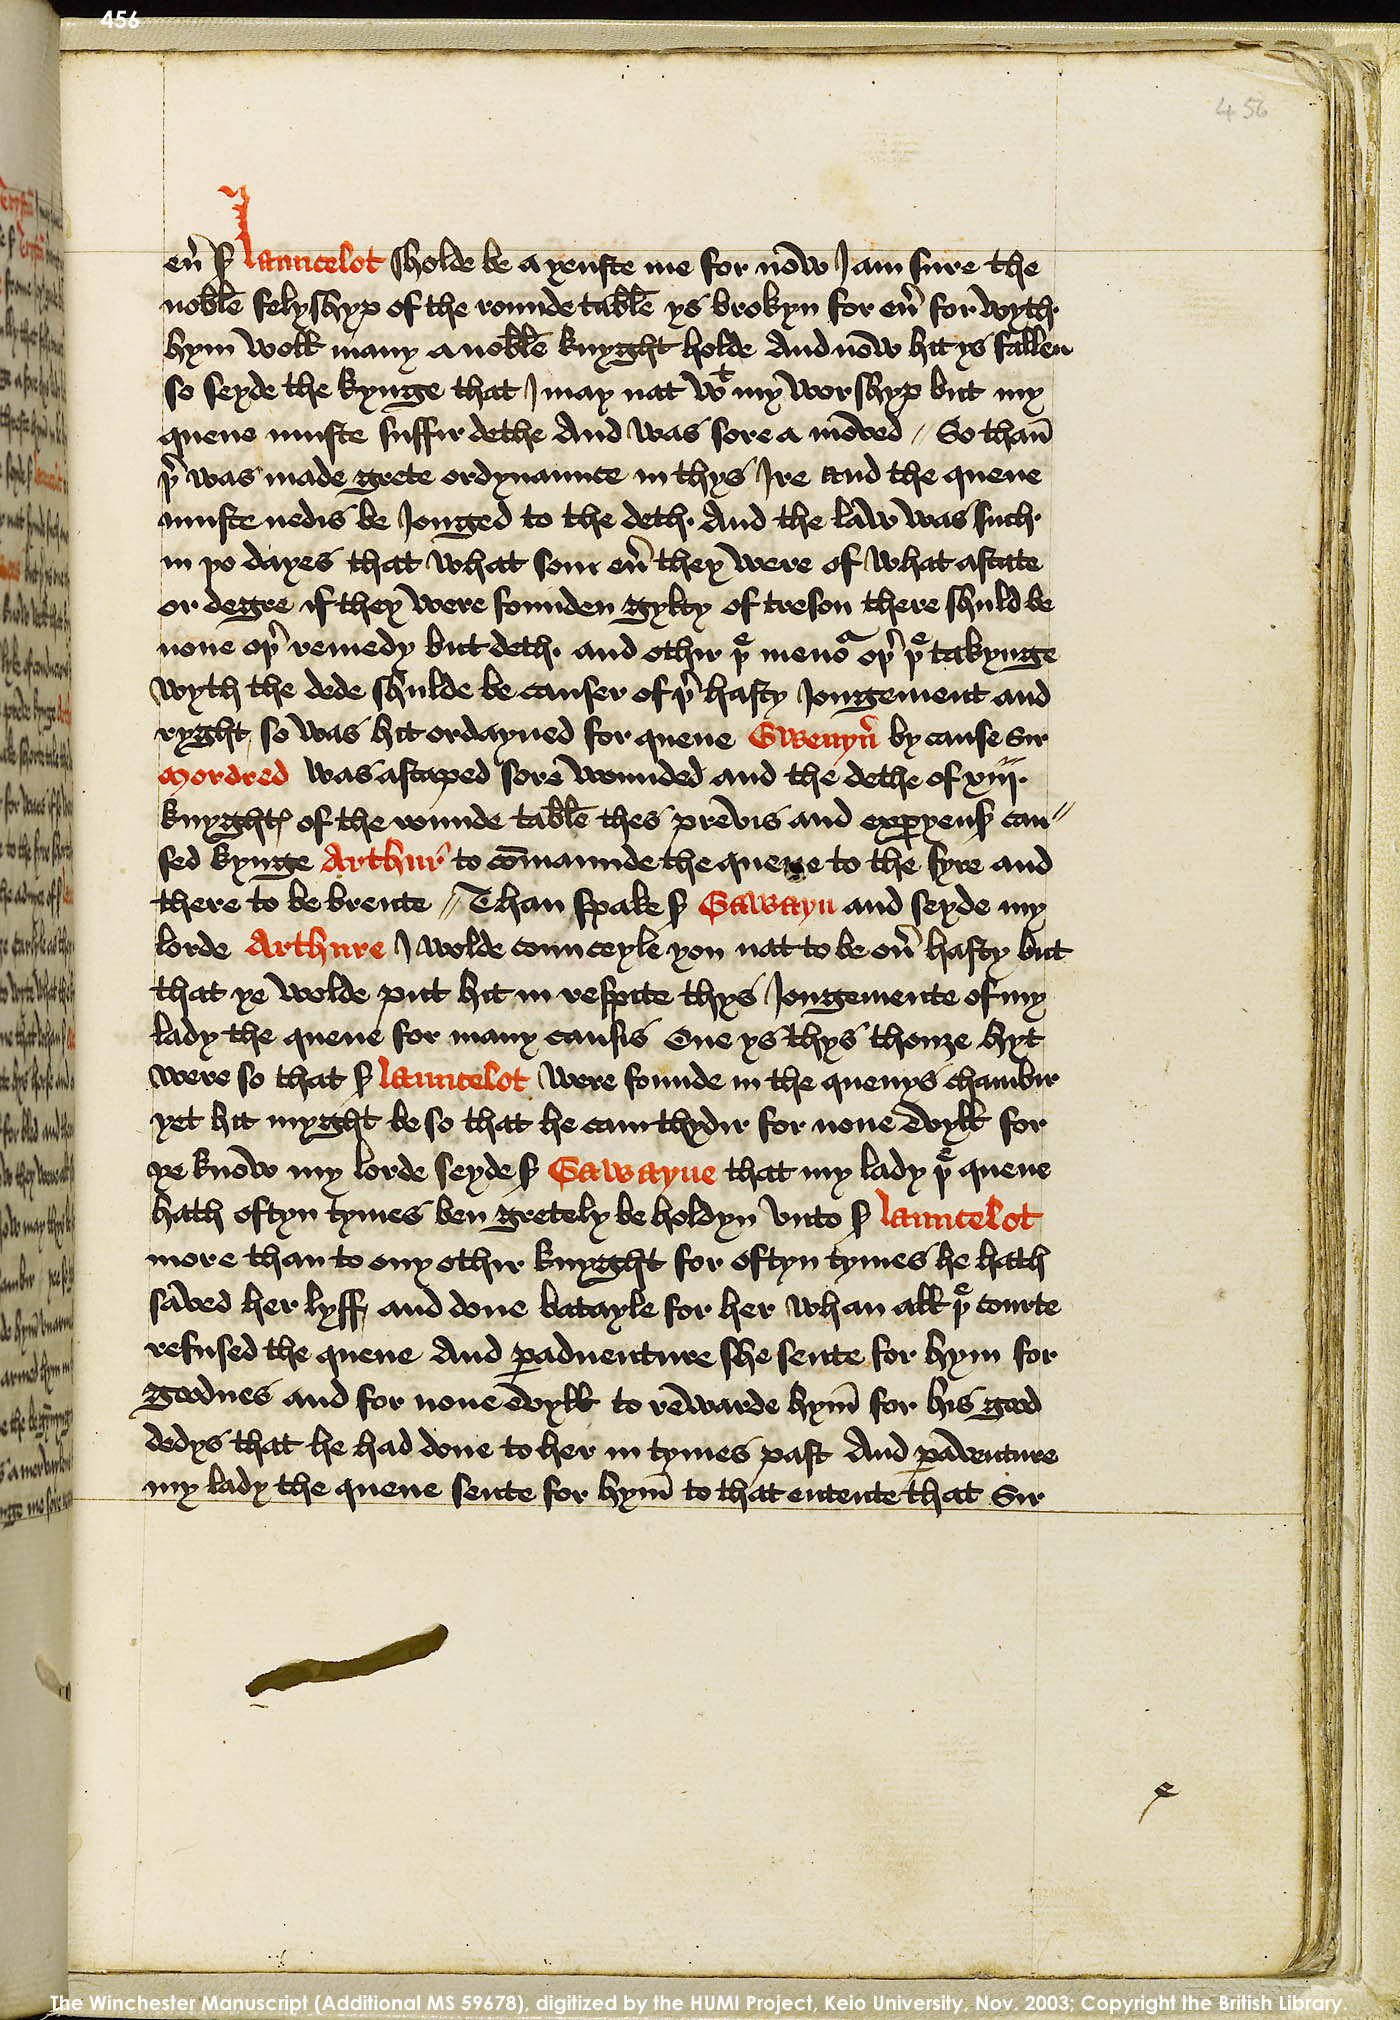 Folio 456r